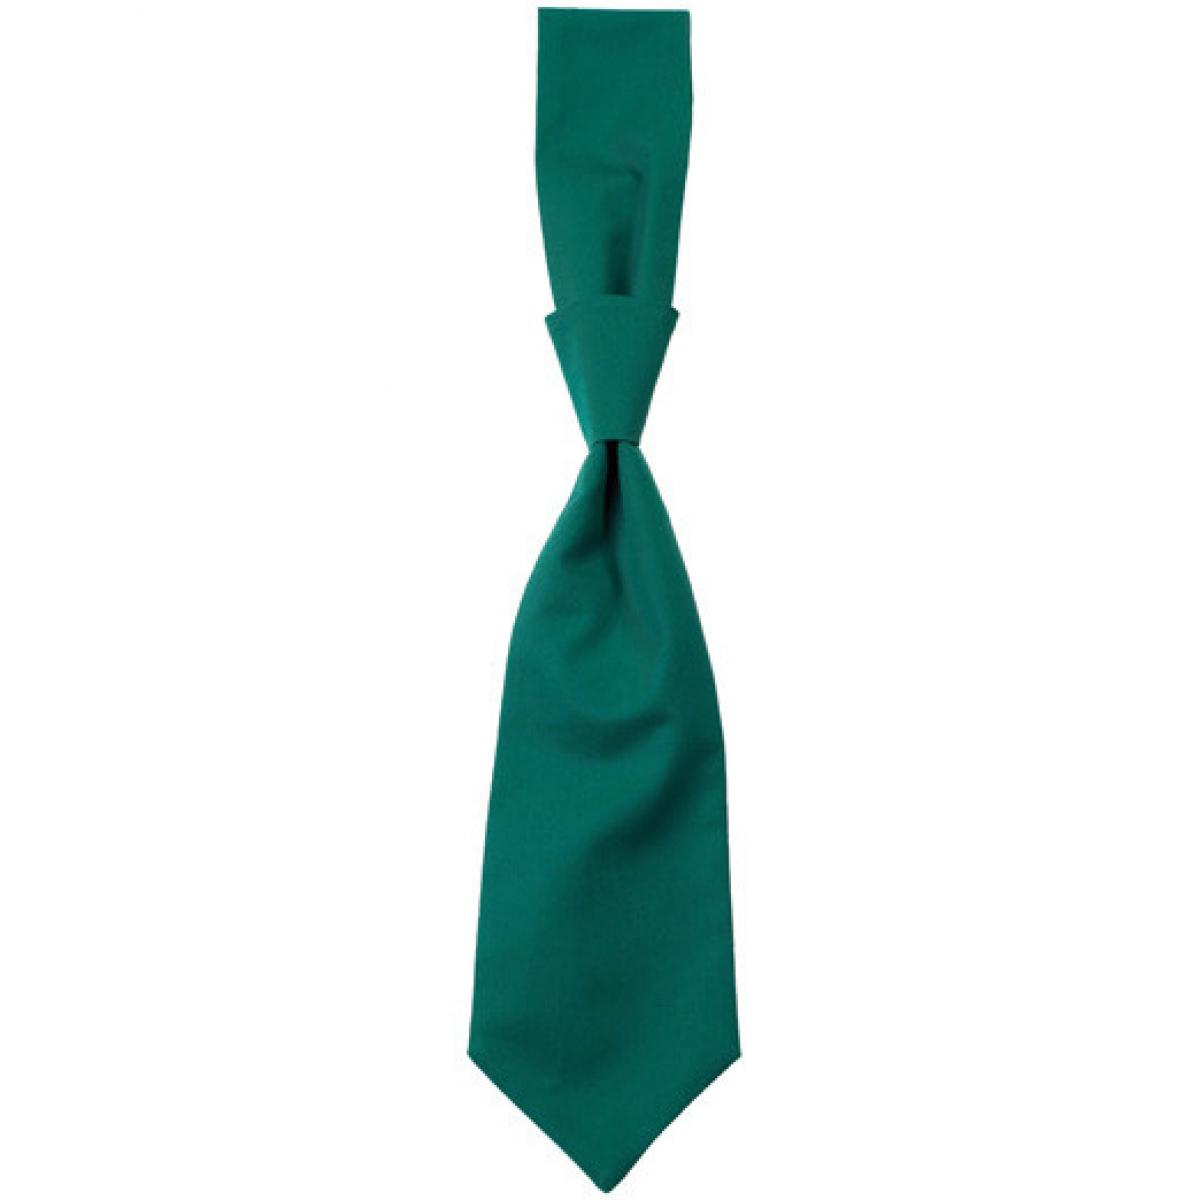 Hersteller: CG Workwear Herstellernummer: 01360-01 Artikelbezeichnung: Krawatte Messina / Zertifiziert nach Oeko-Tex 100 Farbe: Evergreen